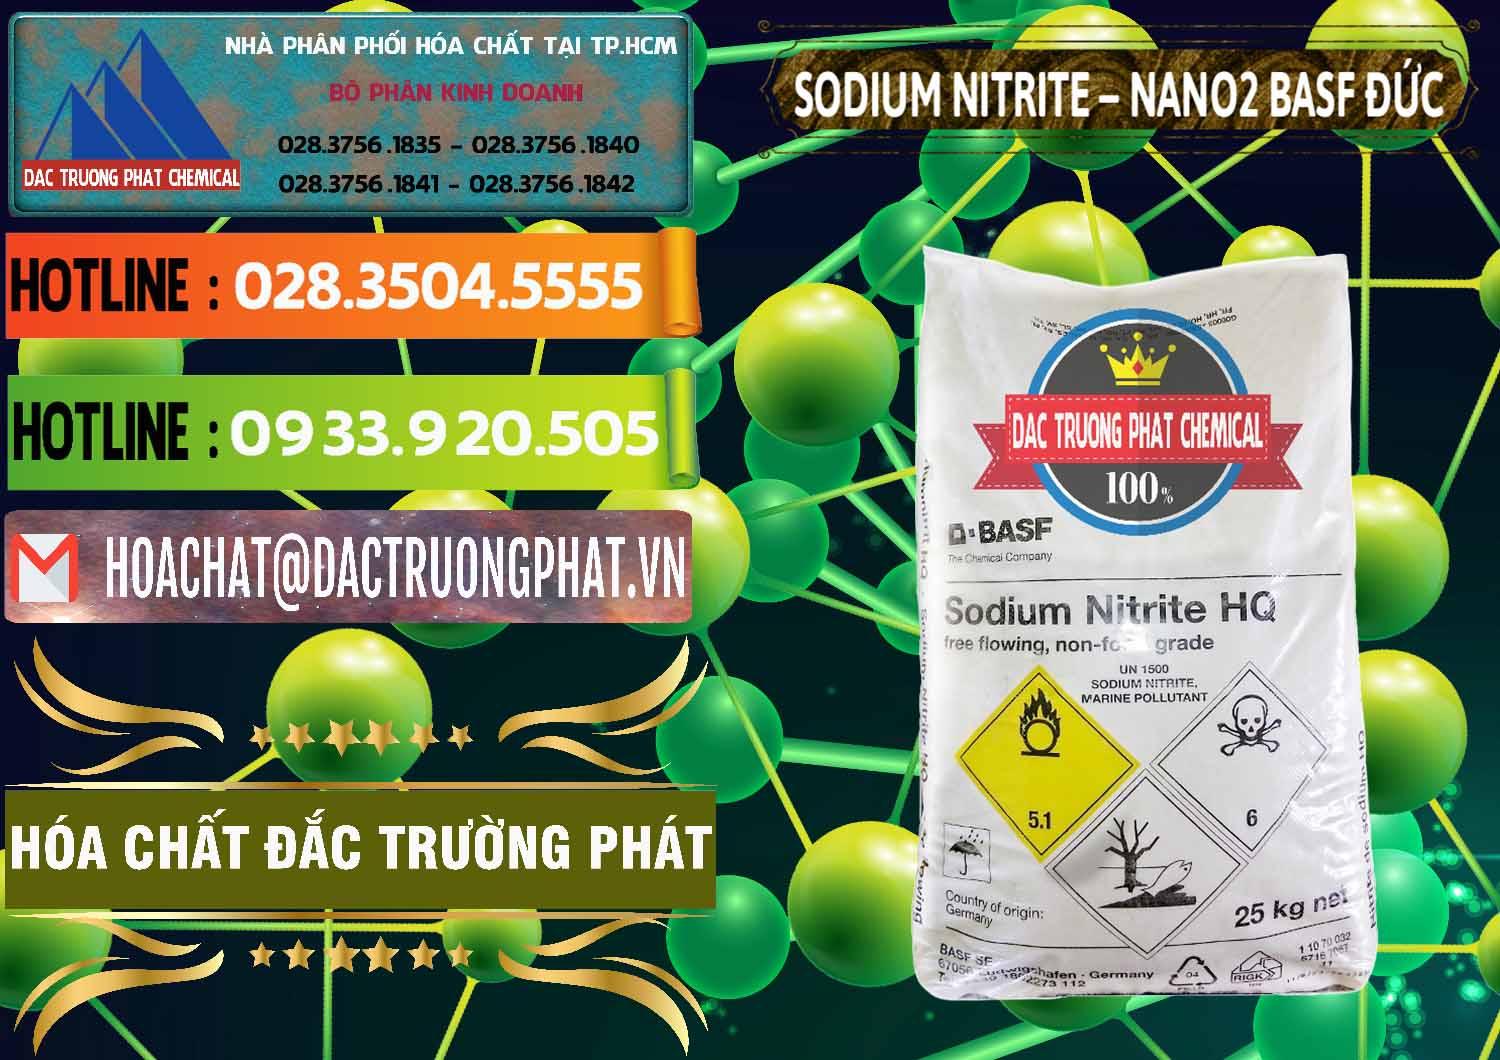 Cty bán & phân phối Sodium Nitrite - NANO2 Đức BASF Germany - 0148 - Nơi chuyên cung cấp ( kinh doanh ) hóa chất tại TP.HCM - cungcaphoachat.com.vn